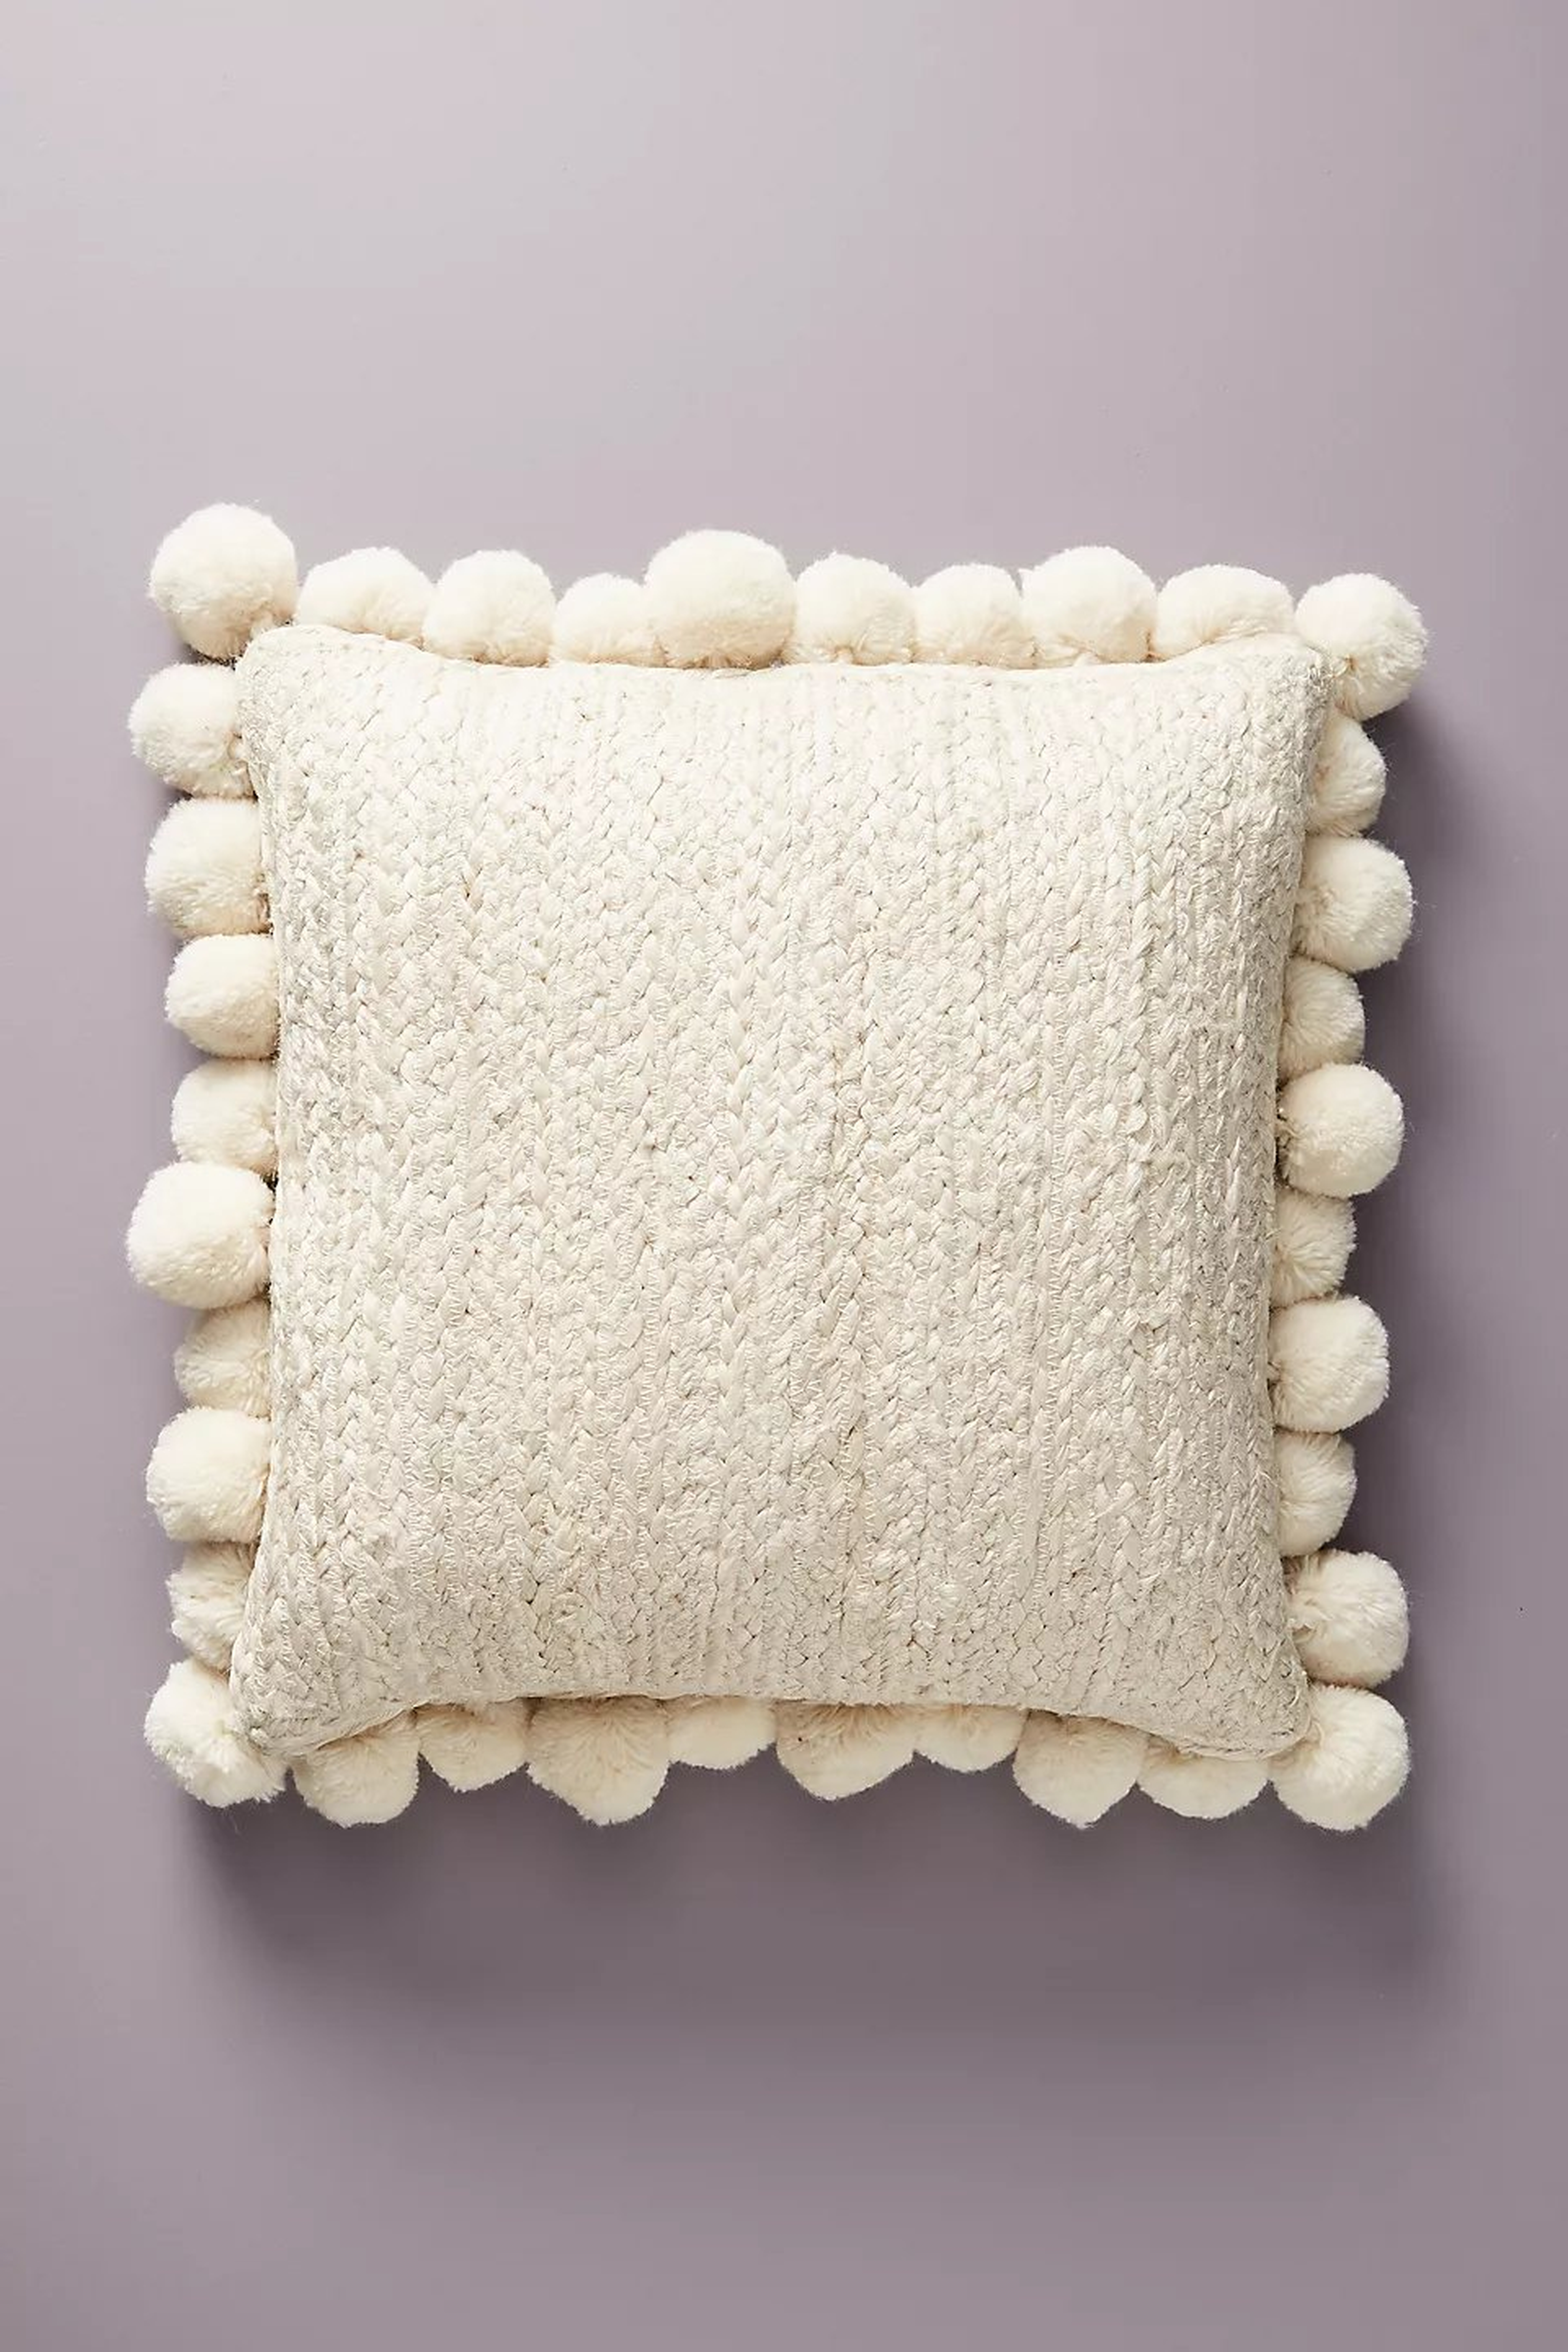 Pommed Jute Pillow, 18" x 18" - Anthropologie